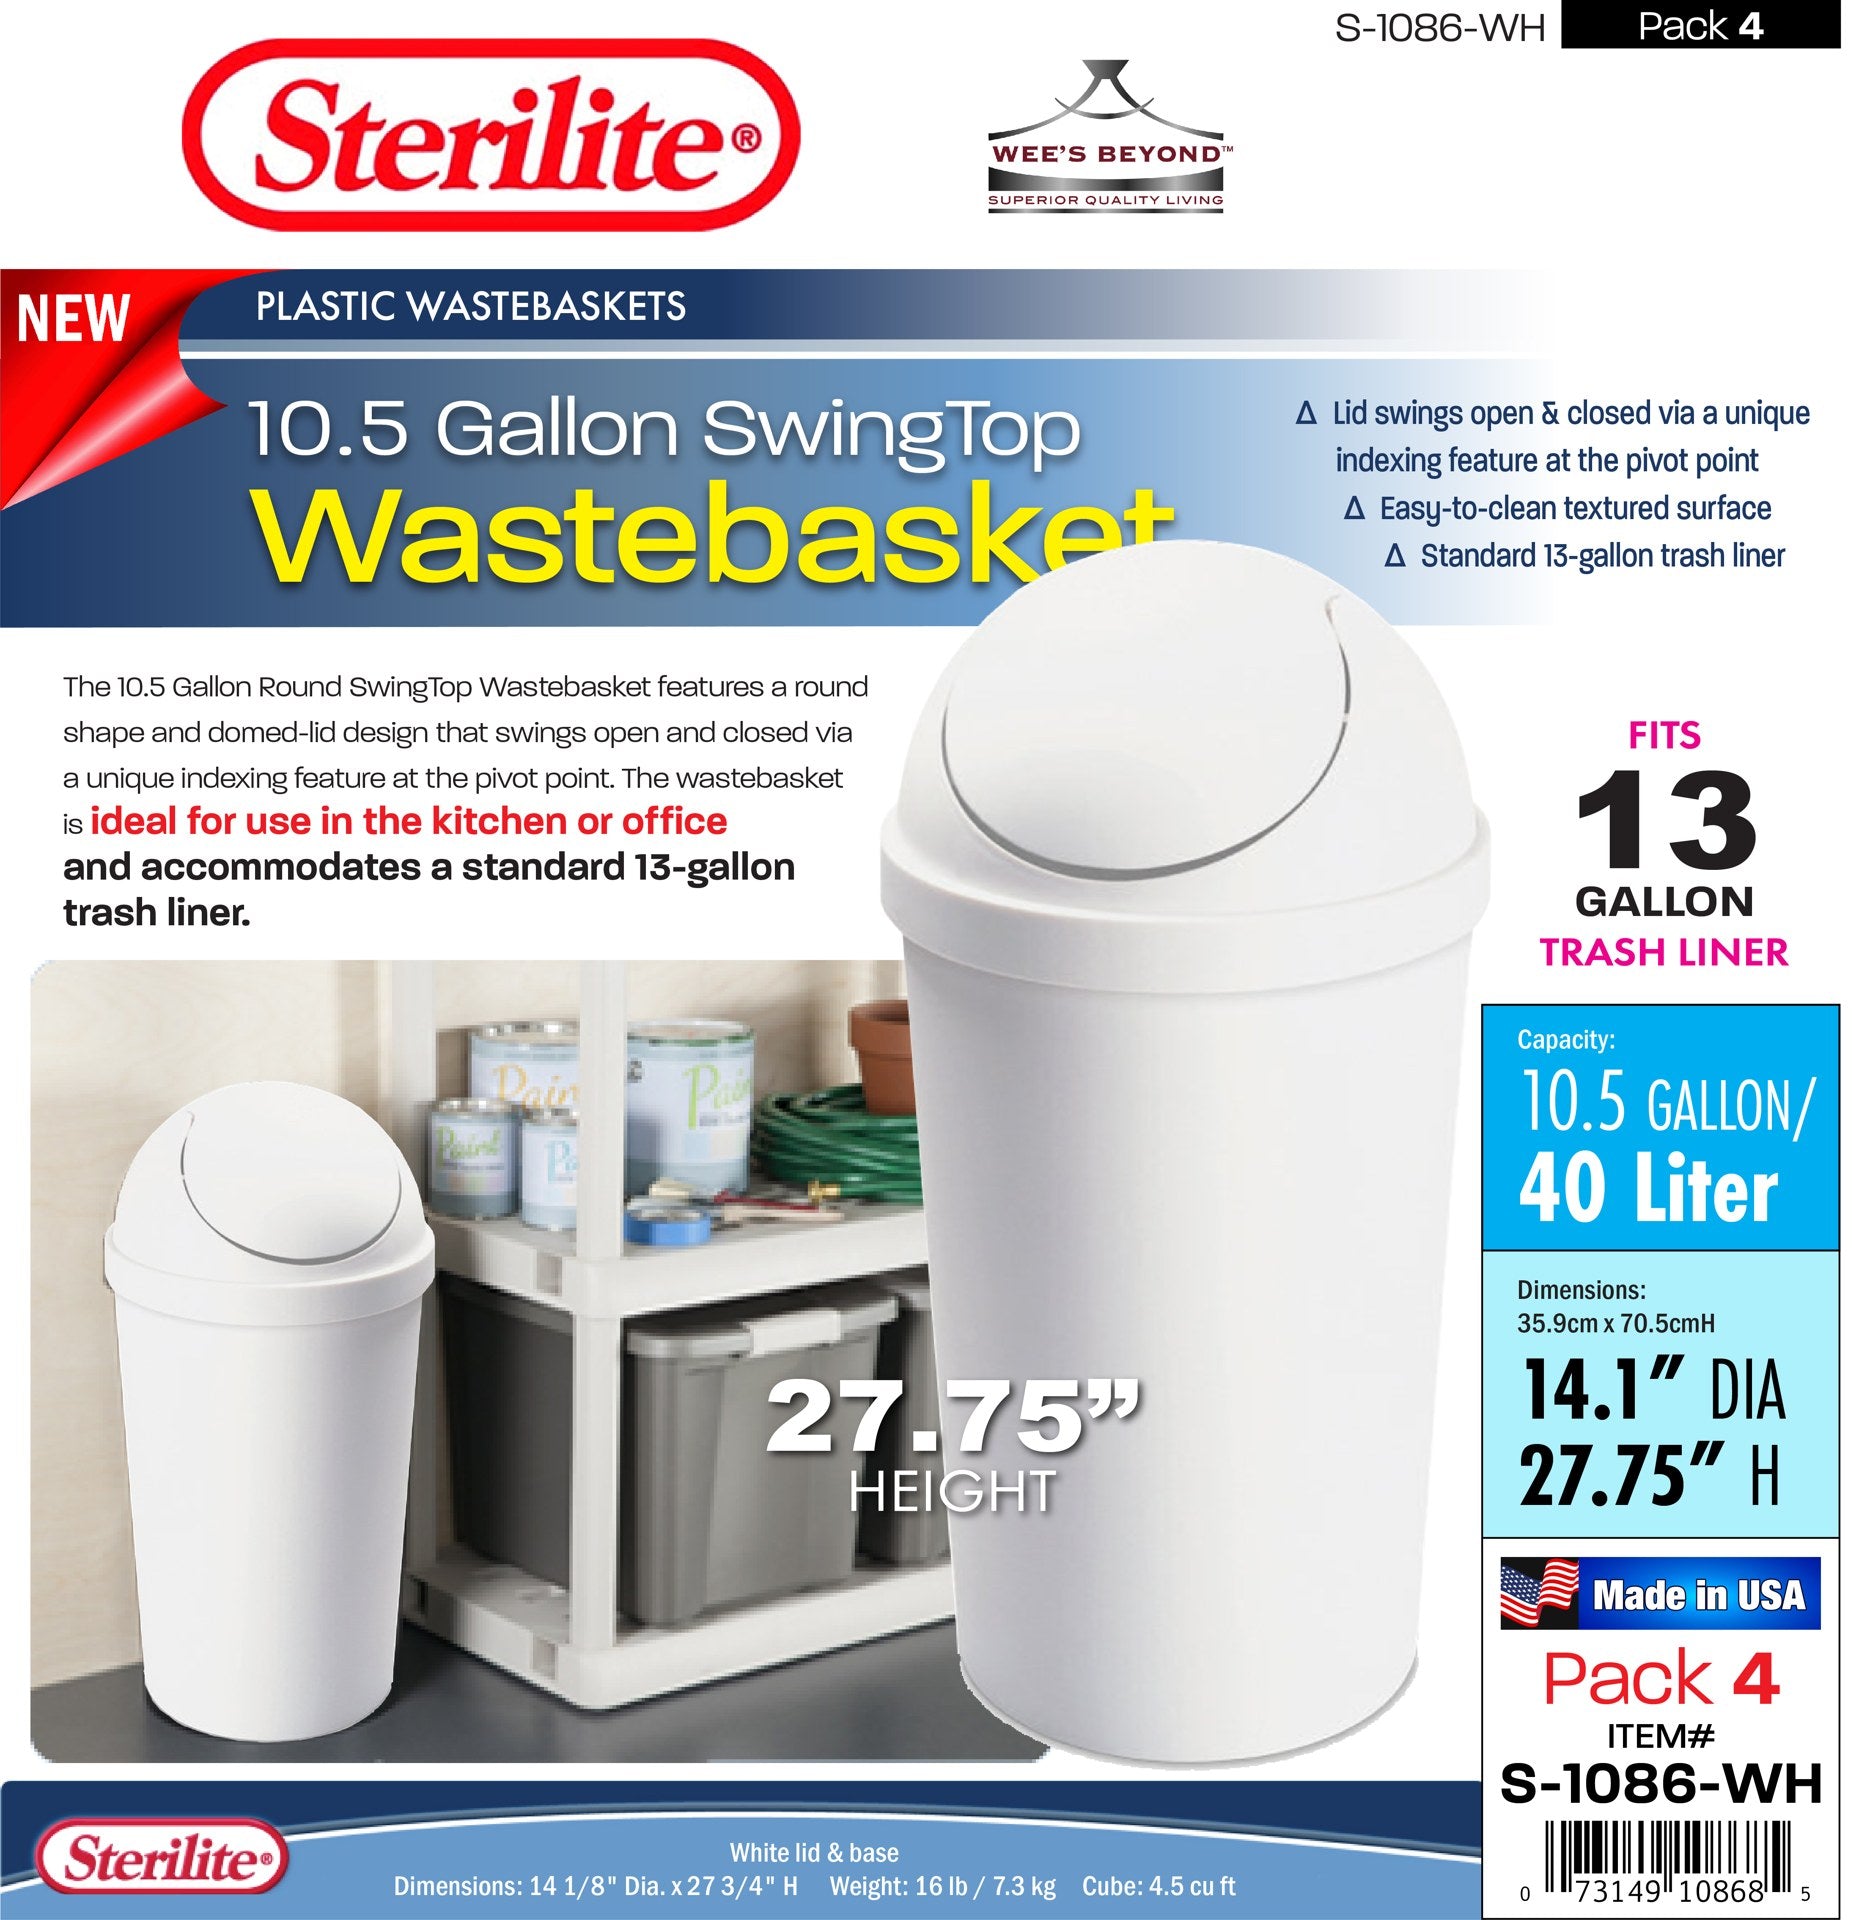 S-1086-WH Sterilite Plastic 10.5 Gallon SwingTop Wastebasket